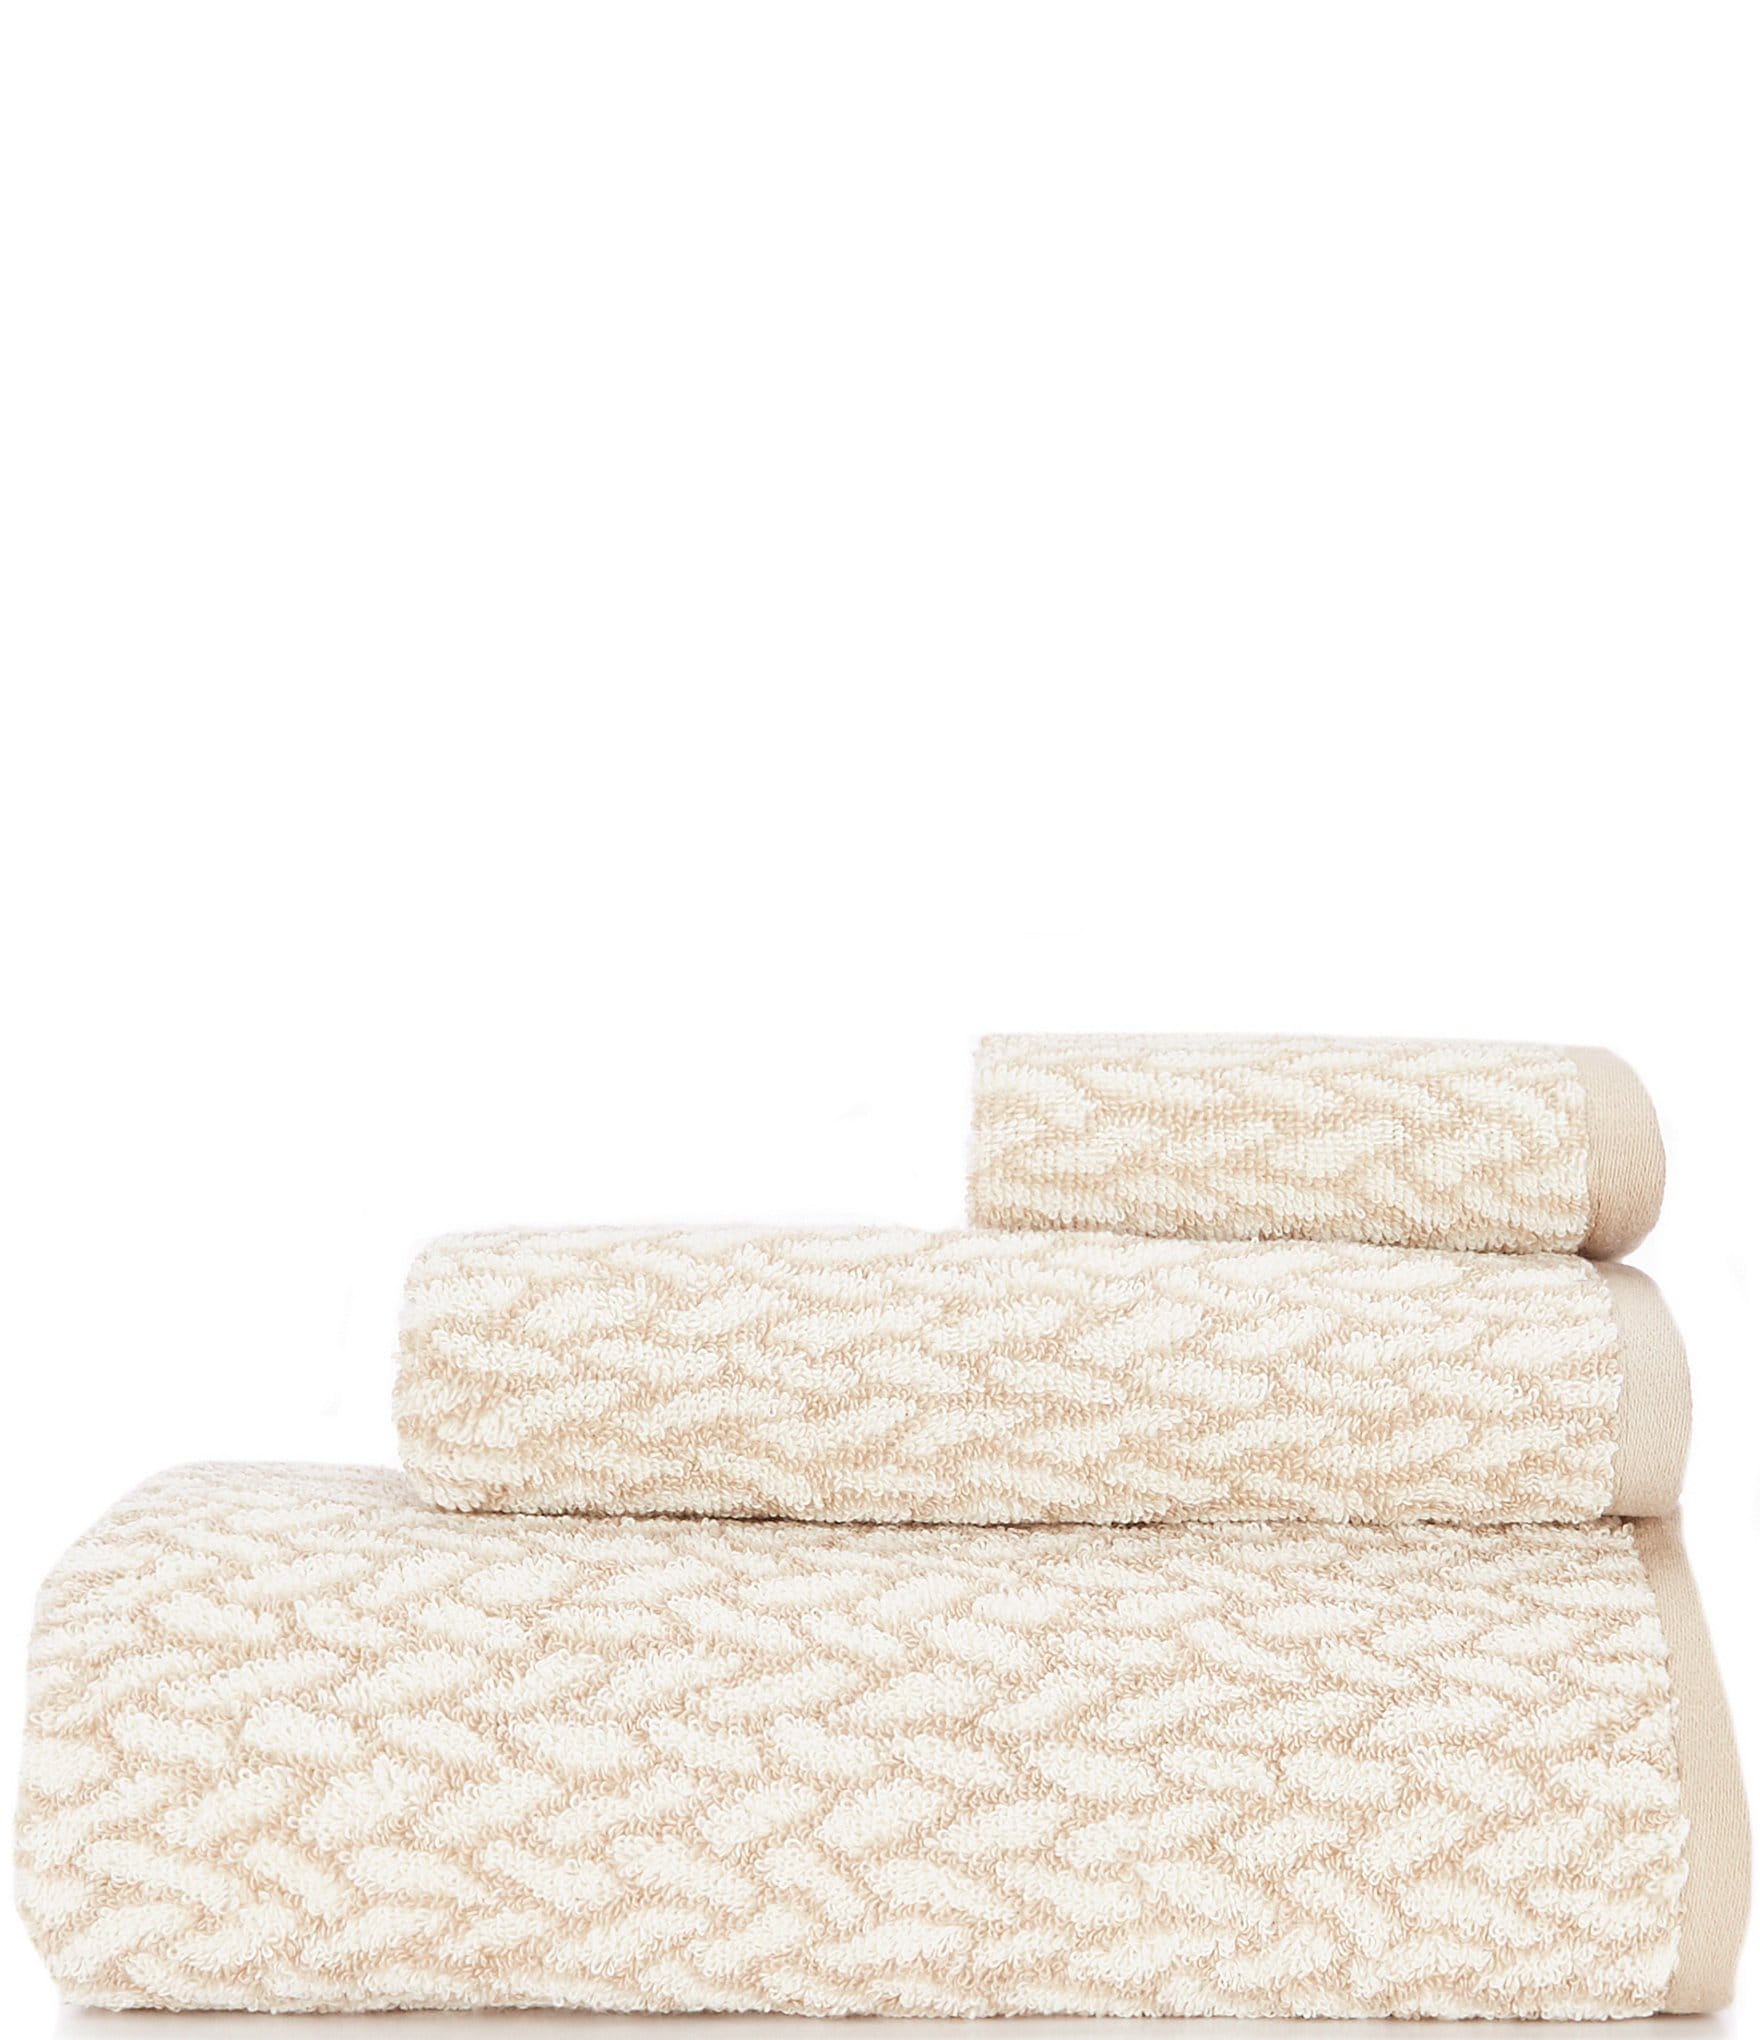 https://dimg.dillards.com/is/image/DillardsZoom/zoom/lauren-ralph-lauren-sanders-basketweave-bath-towels/05708225_zi_solid_tan.jpg